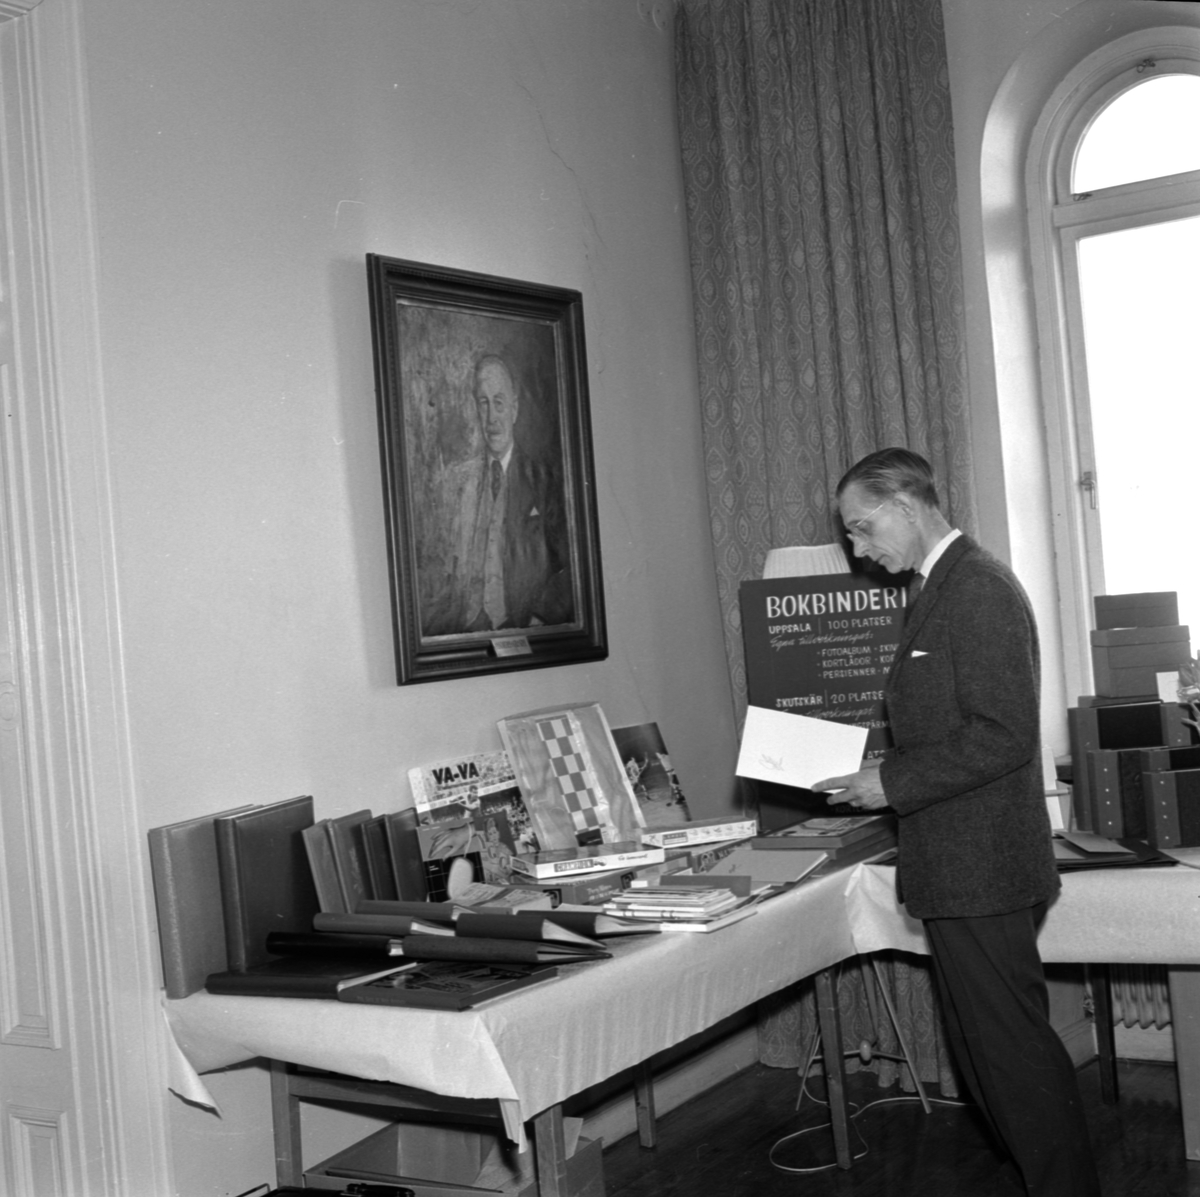 Landstingets verkstäder har utställning, Uppsala april 1961